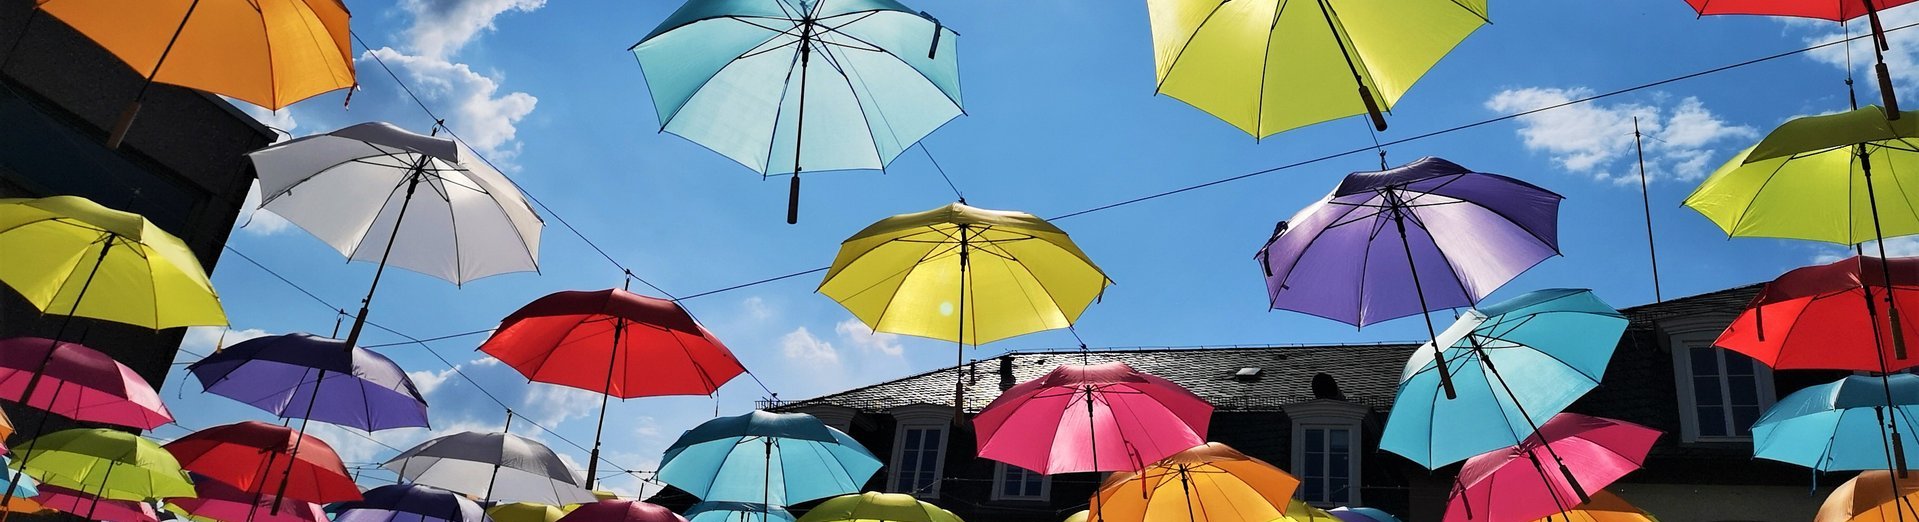 Viele bunte Regenschirme wurden hinter dem Rathaus Saarwellingen aufgehangen und bilden einen Schirmhimmel. Die Sonne scheint und der Himmel ist ist hellblau.